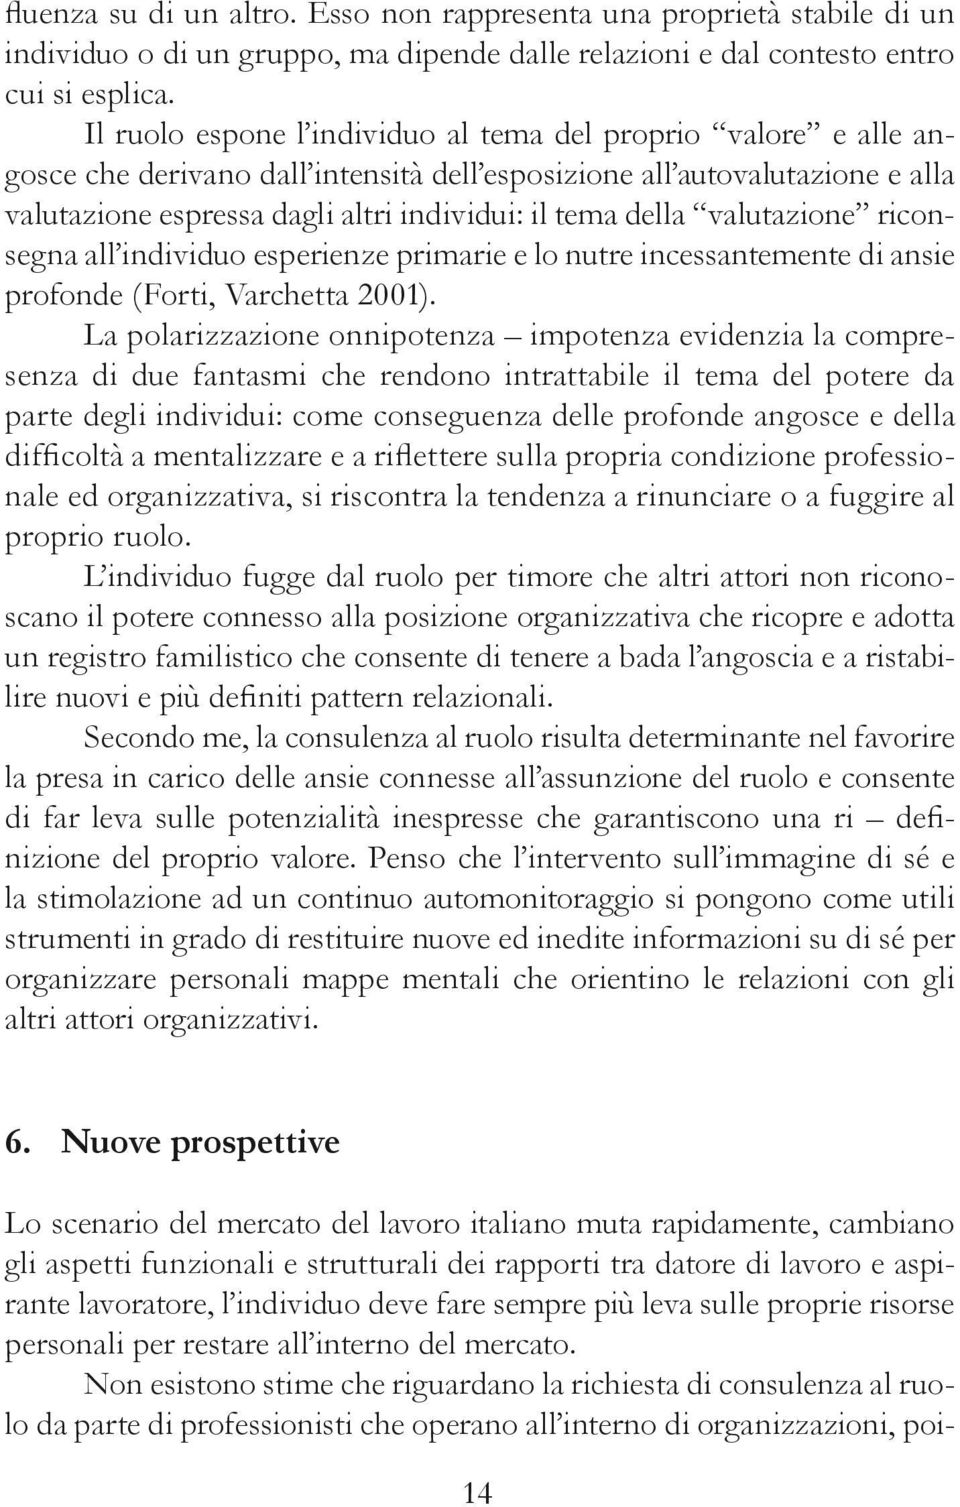 valutazione riconsegna all individuo esperienze primarie e lo nutre incessantemente di ansie profonde (Forti, Varchetta 2001).